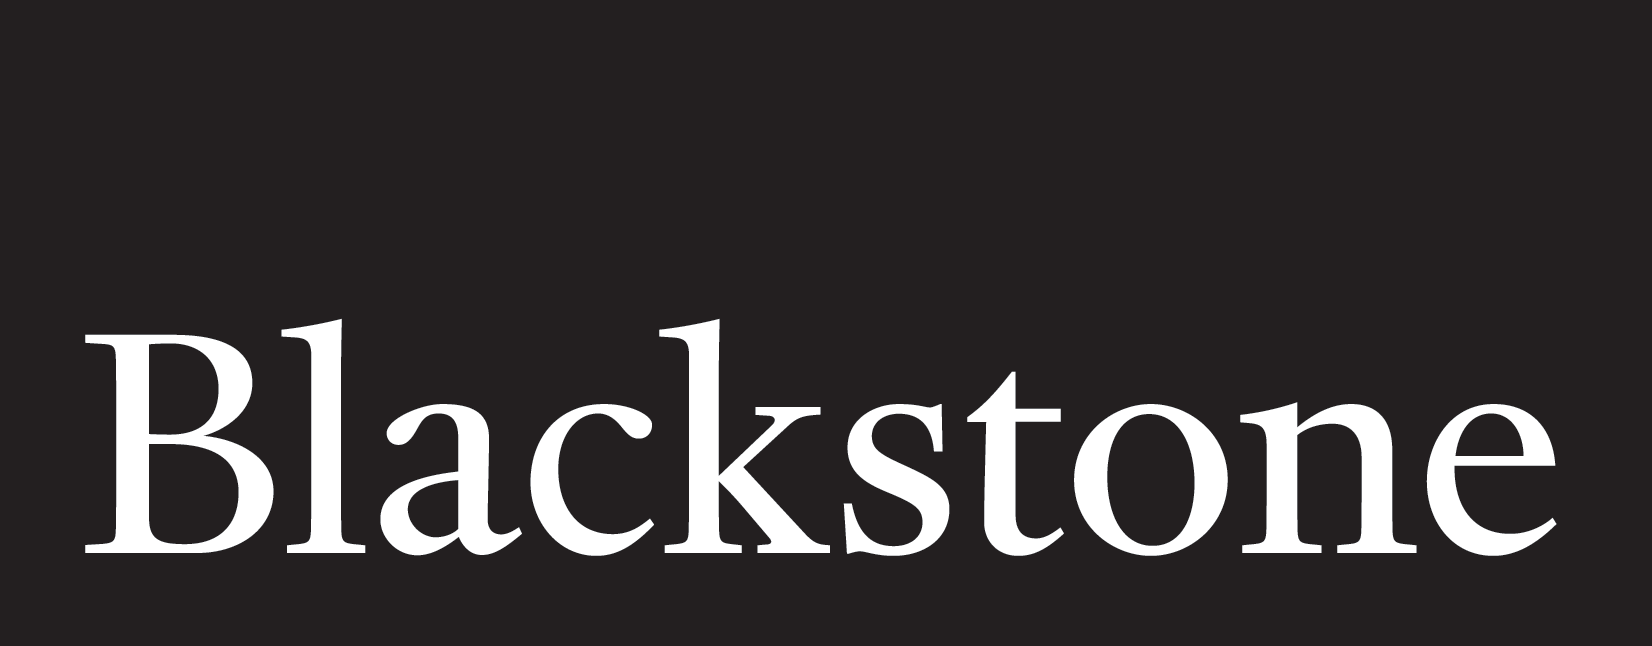 Blackstone Blackstone Blackstone Blackstone Blackstone Blackstone Blackstone Blackstone Blackstone B